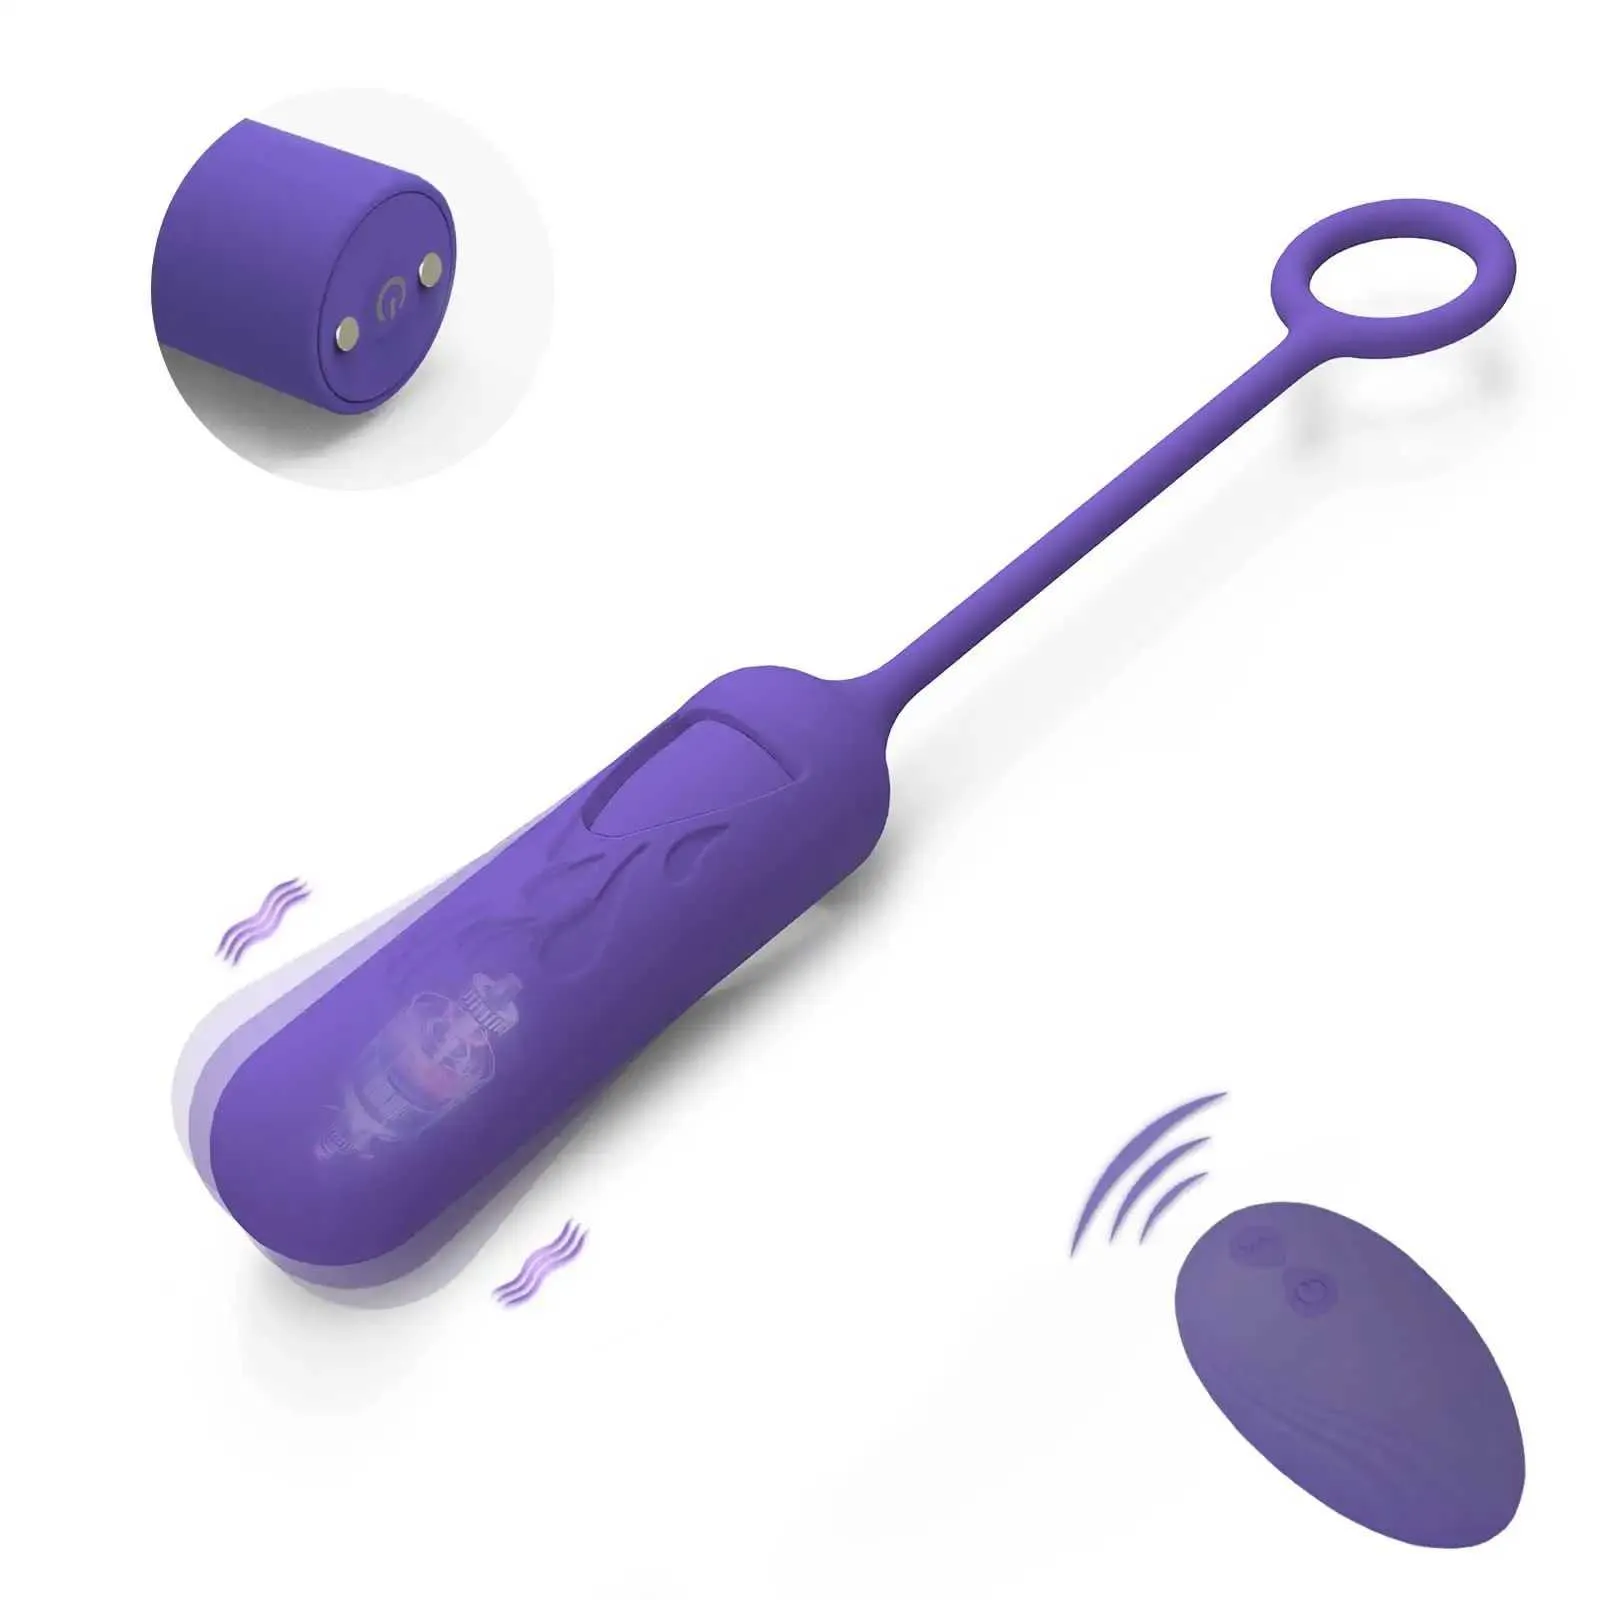 Schoonheidsartikelen 10 Modi Remote Control Mini Egg Bullet Vibrator Sexy speelgoed voor vrouwen